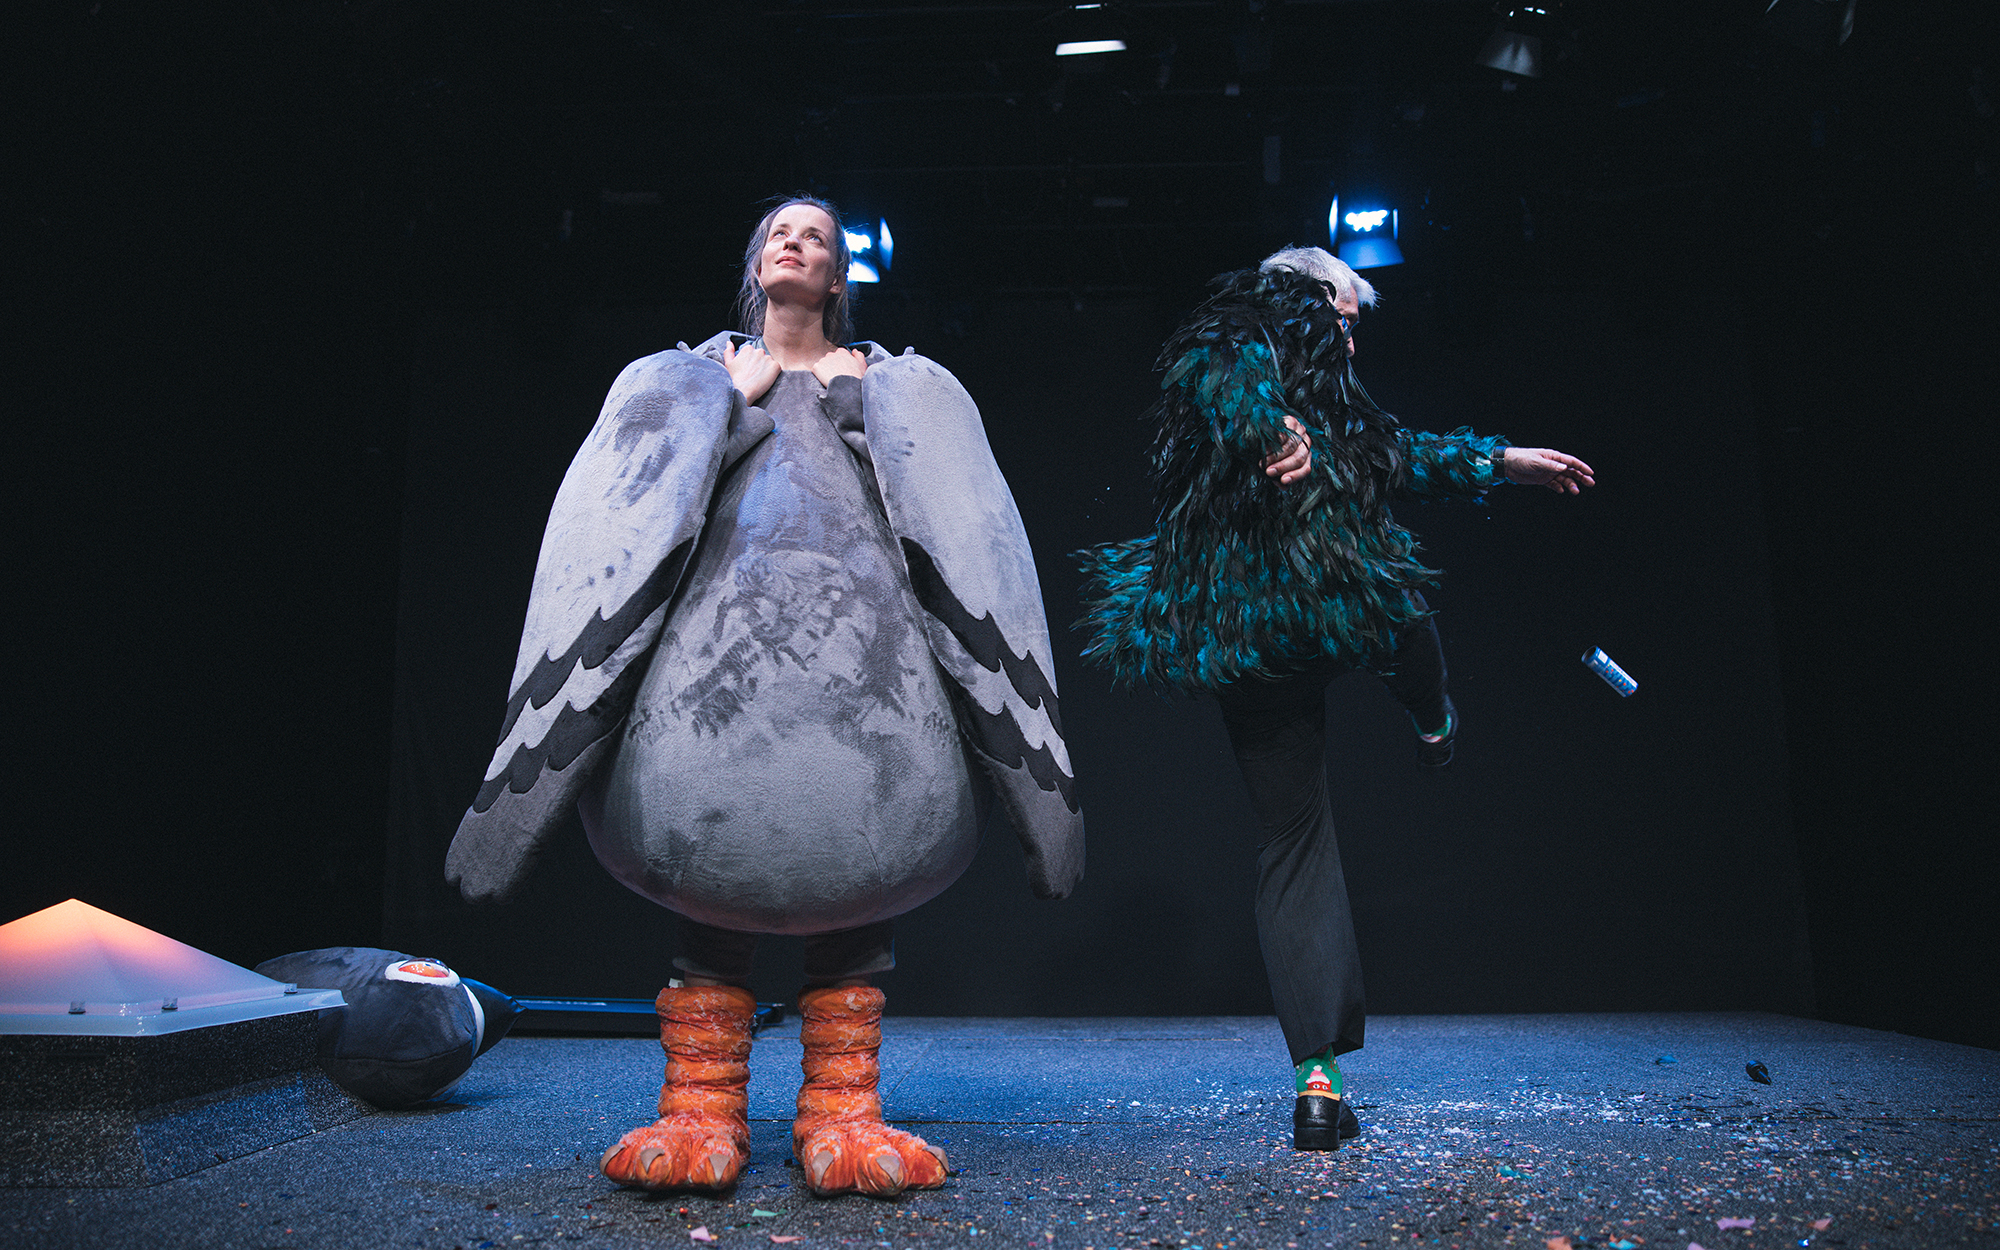 Na levi strani odra se smehlja Ona (Ajda Smrekar), kostumirana v goloba, glavo ima odkrito. On (Sebastian Cavazza) ob njej pleše. Avtor fotografije: Peter Giodani.